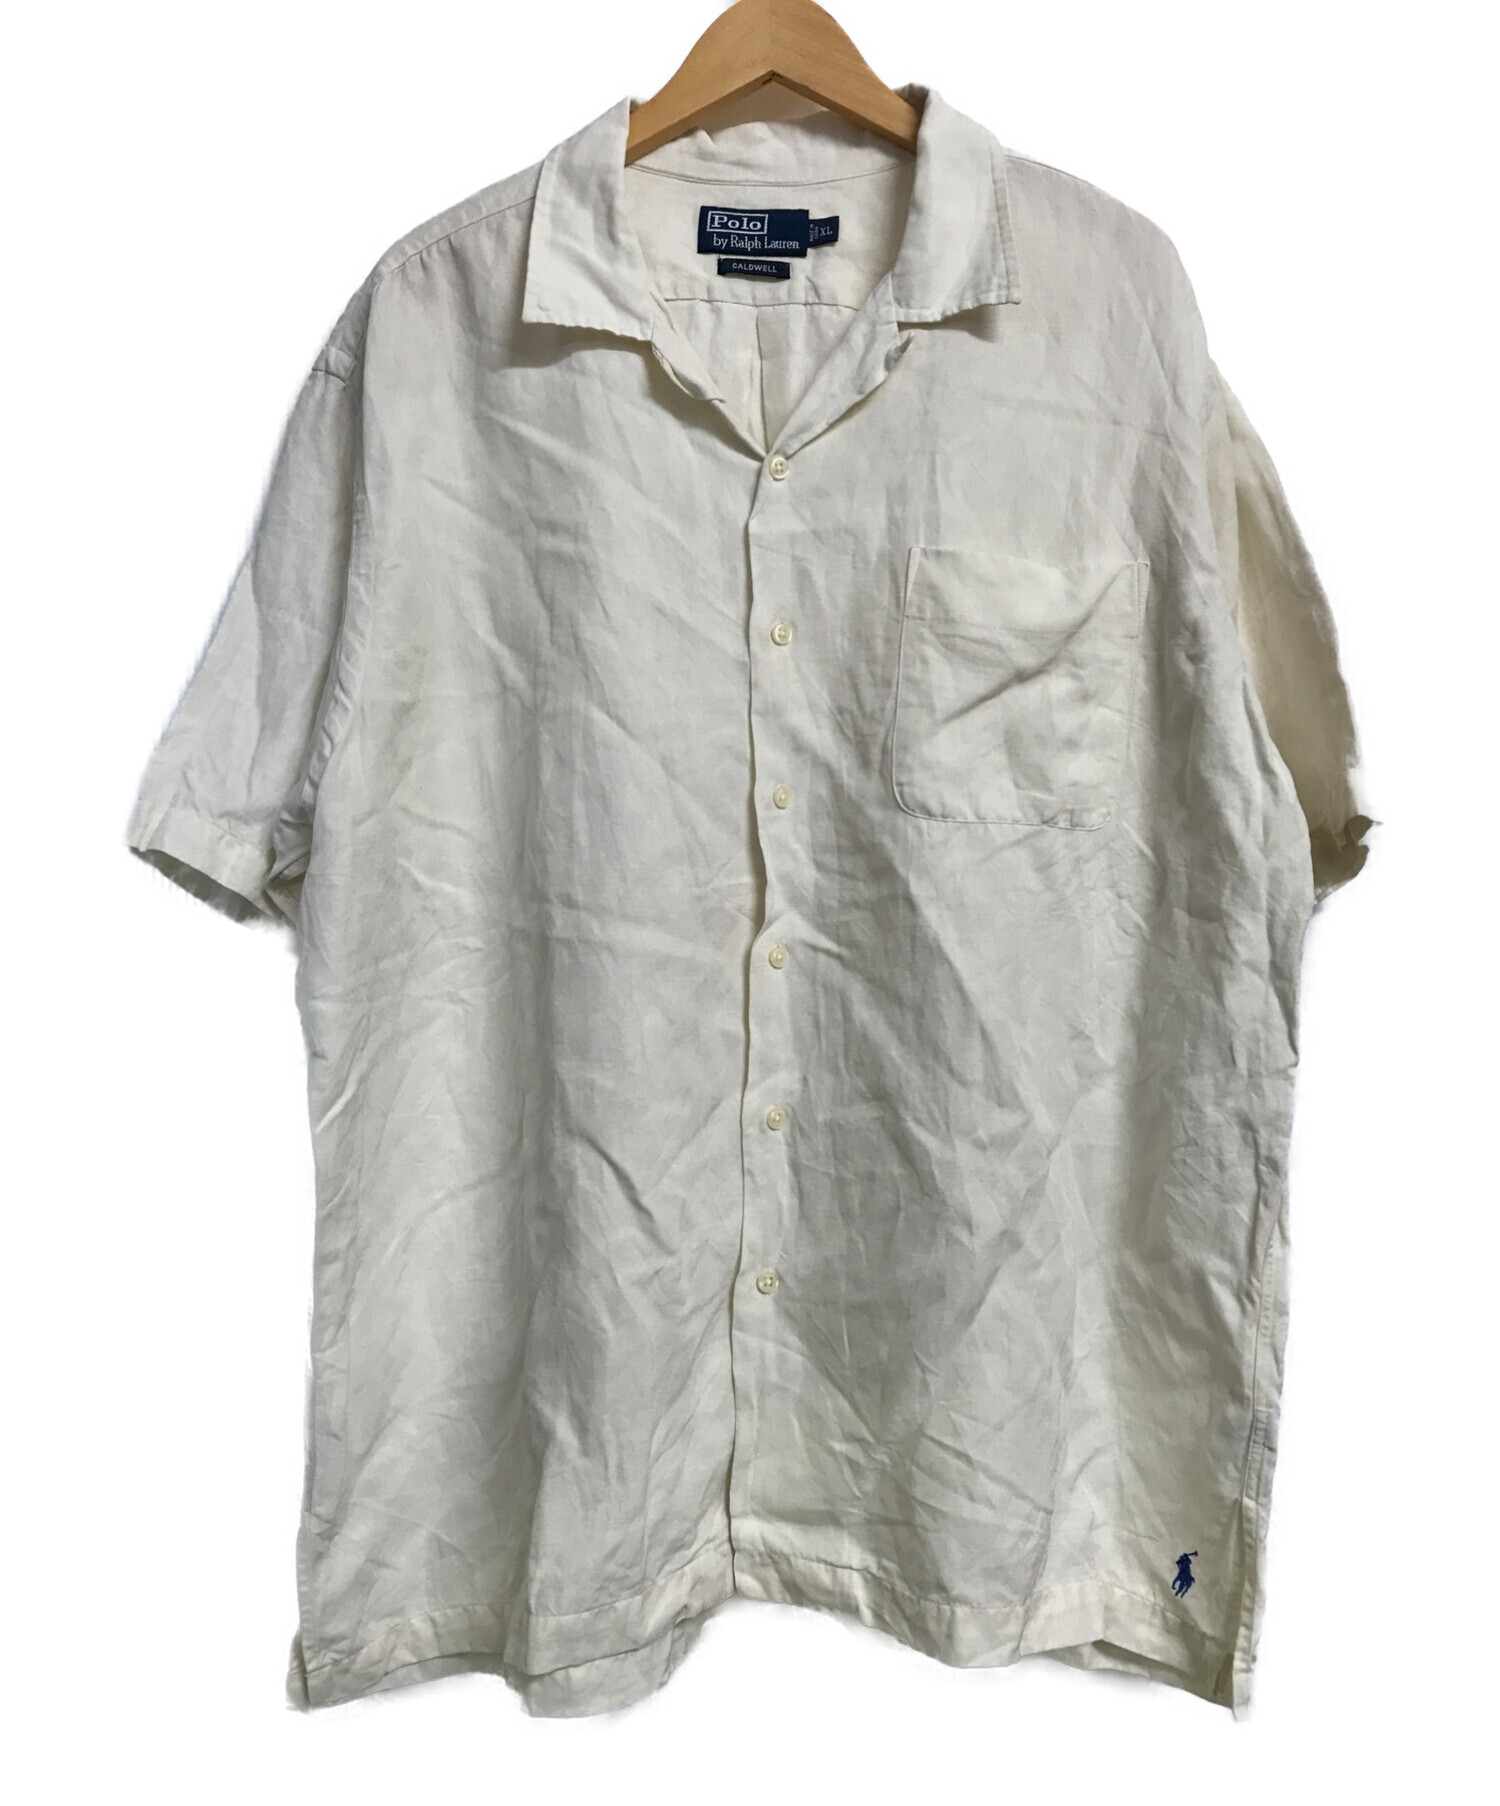 POLO RALPH LAUREN (ポロ・ラルフローレン) CALDWELLオープンカラーシャツ ホワイト サイズ:XL